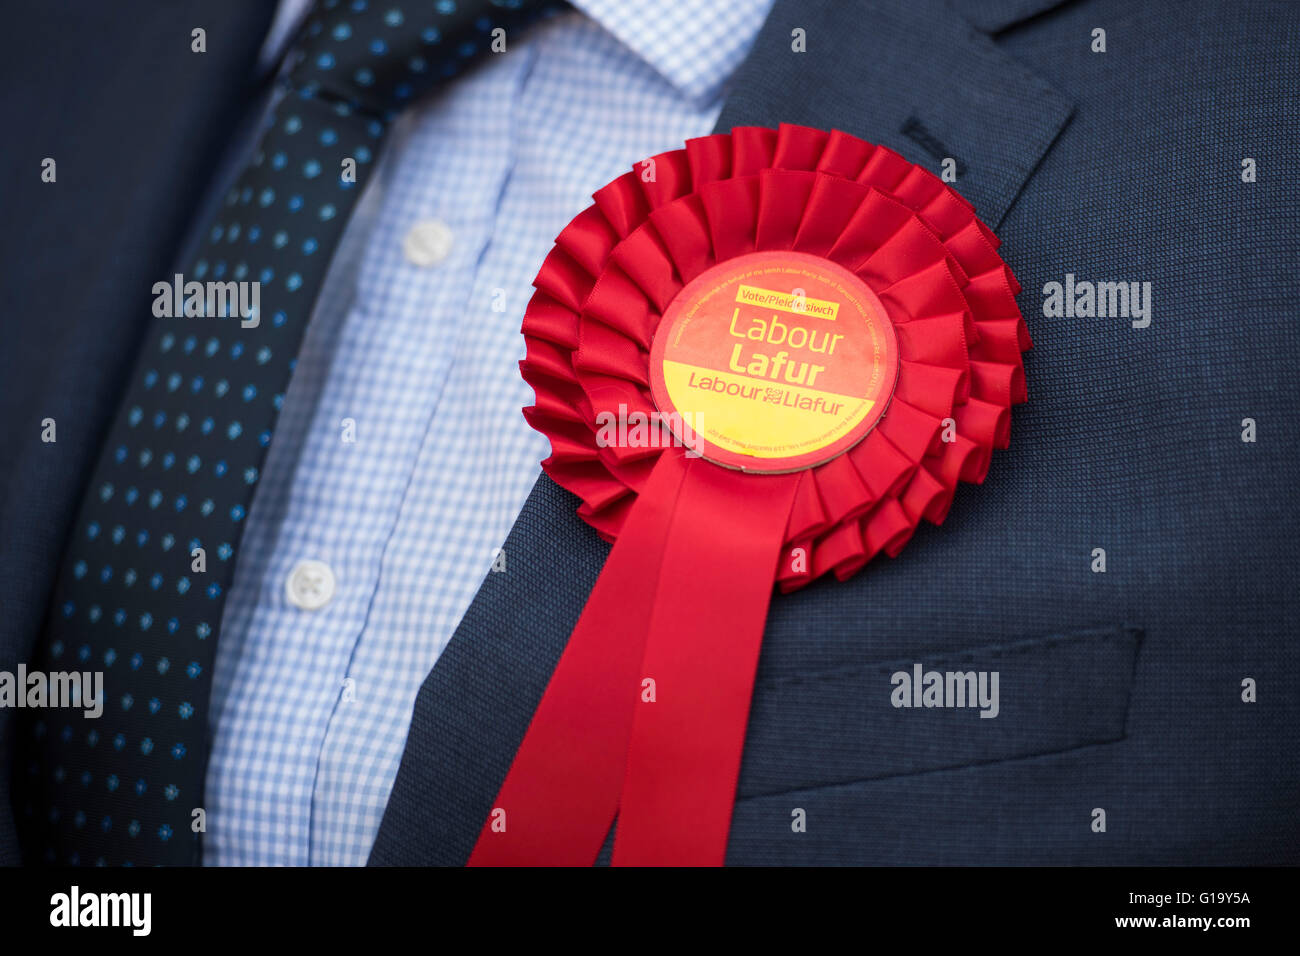 Roseta laboral galés rojo usado por un activista del partido laborista galés. Foto de stock